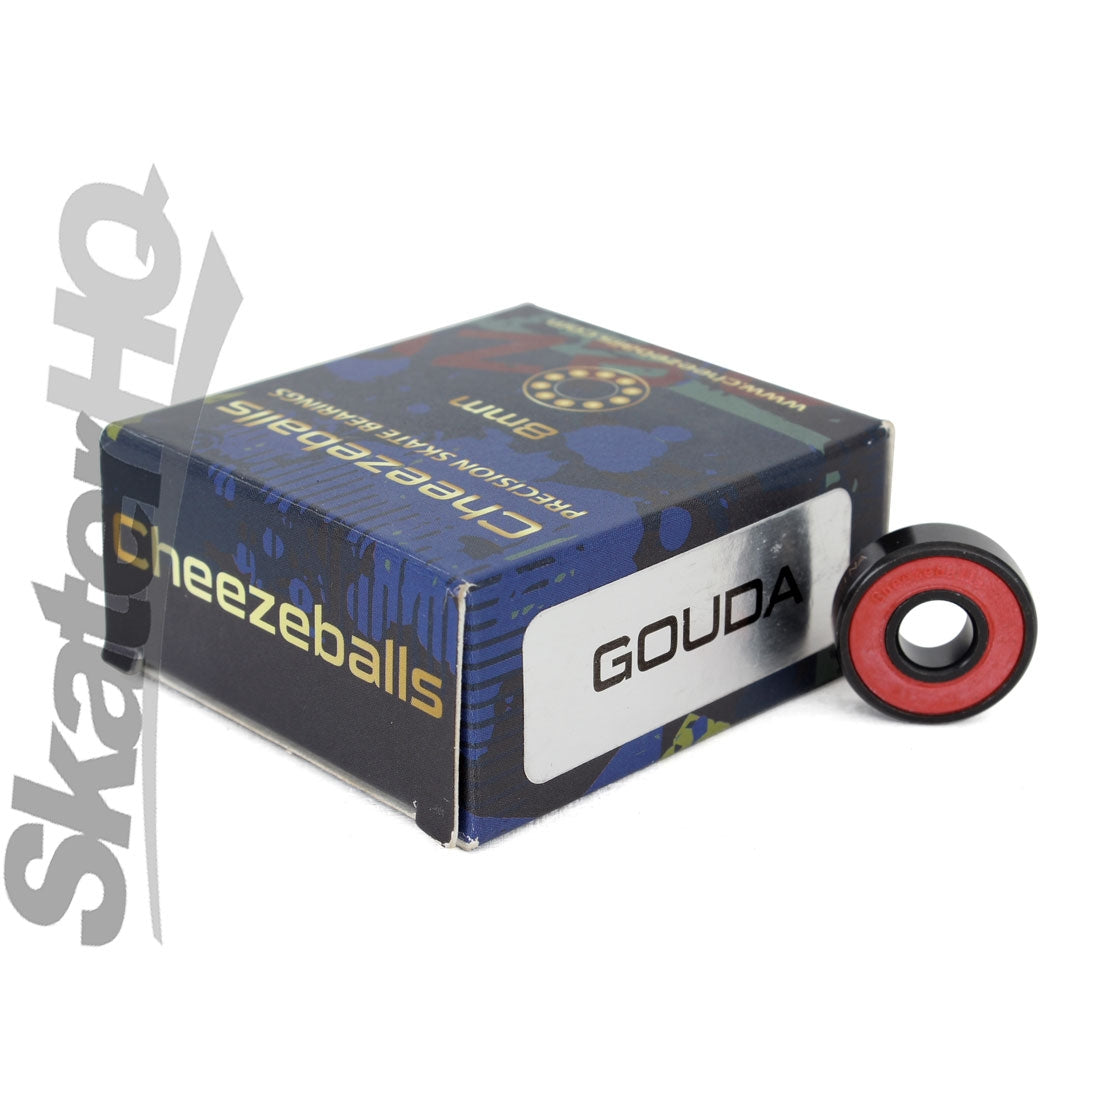 Cheezeballs Gouda Ceramic 8mm Bearings 16pk Inline and Quad Bearings